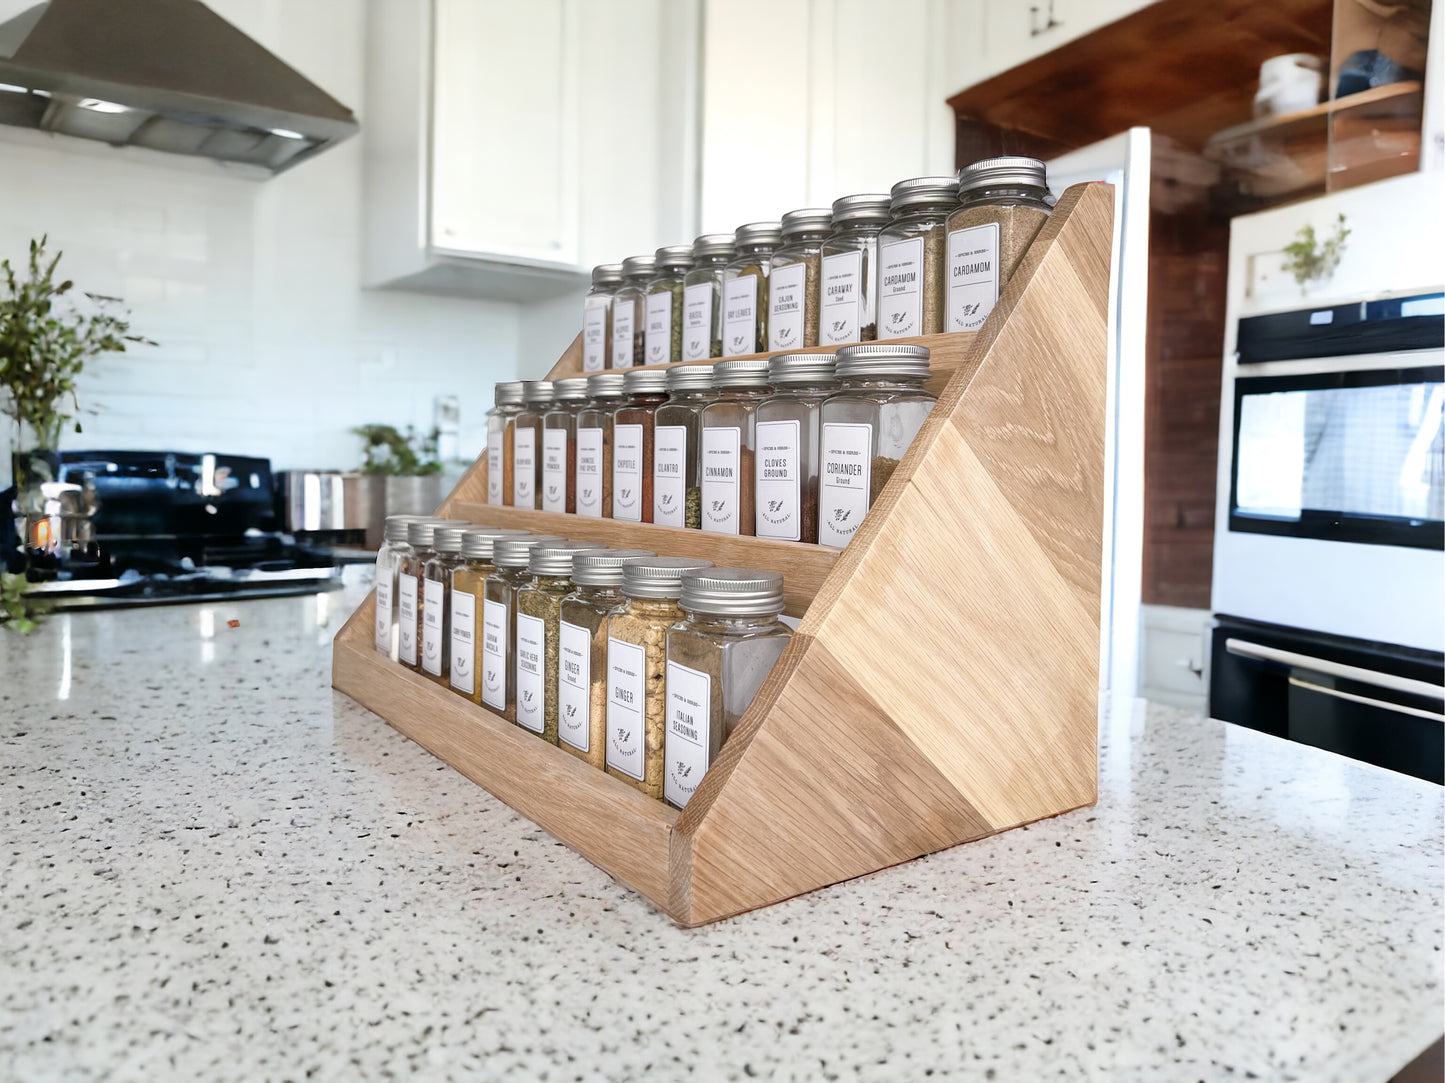 Wood Spice Rack – 2 Size Options – Spice Storage – Spice Shelf – Spice Jar Organization – Kitchen Organization - 50+ Colors